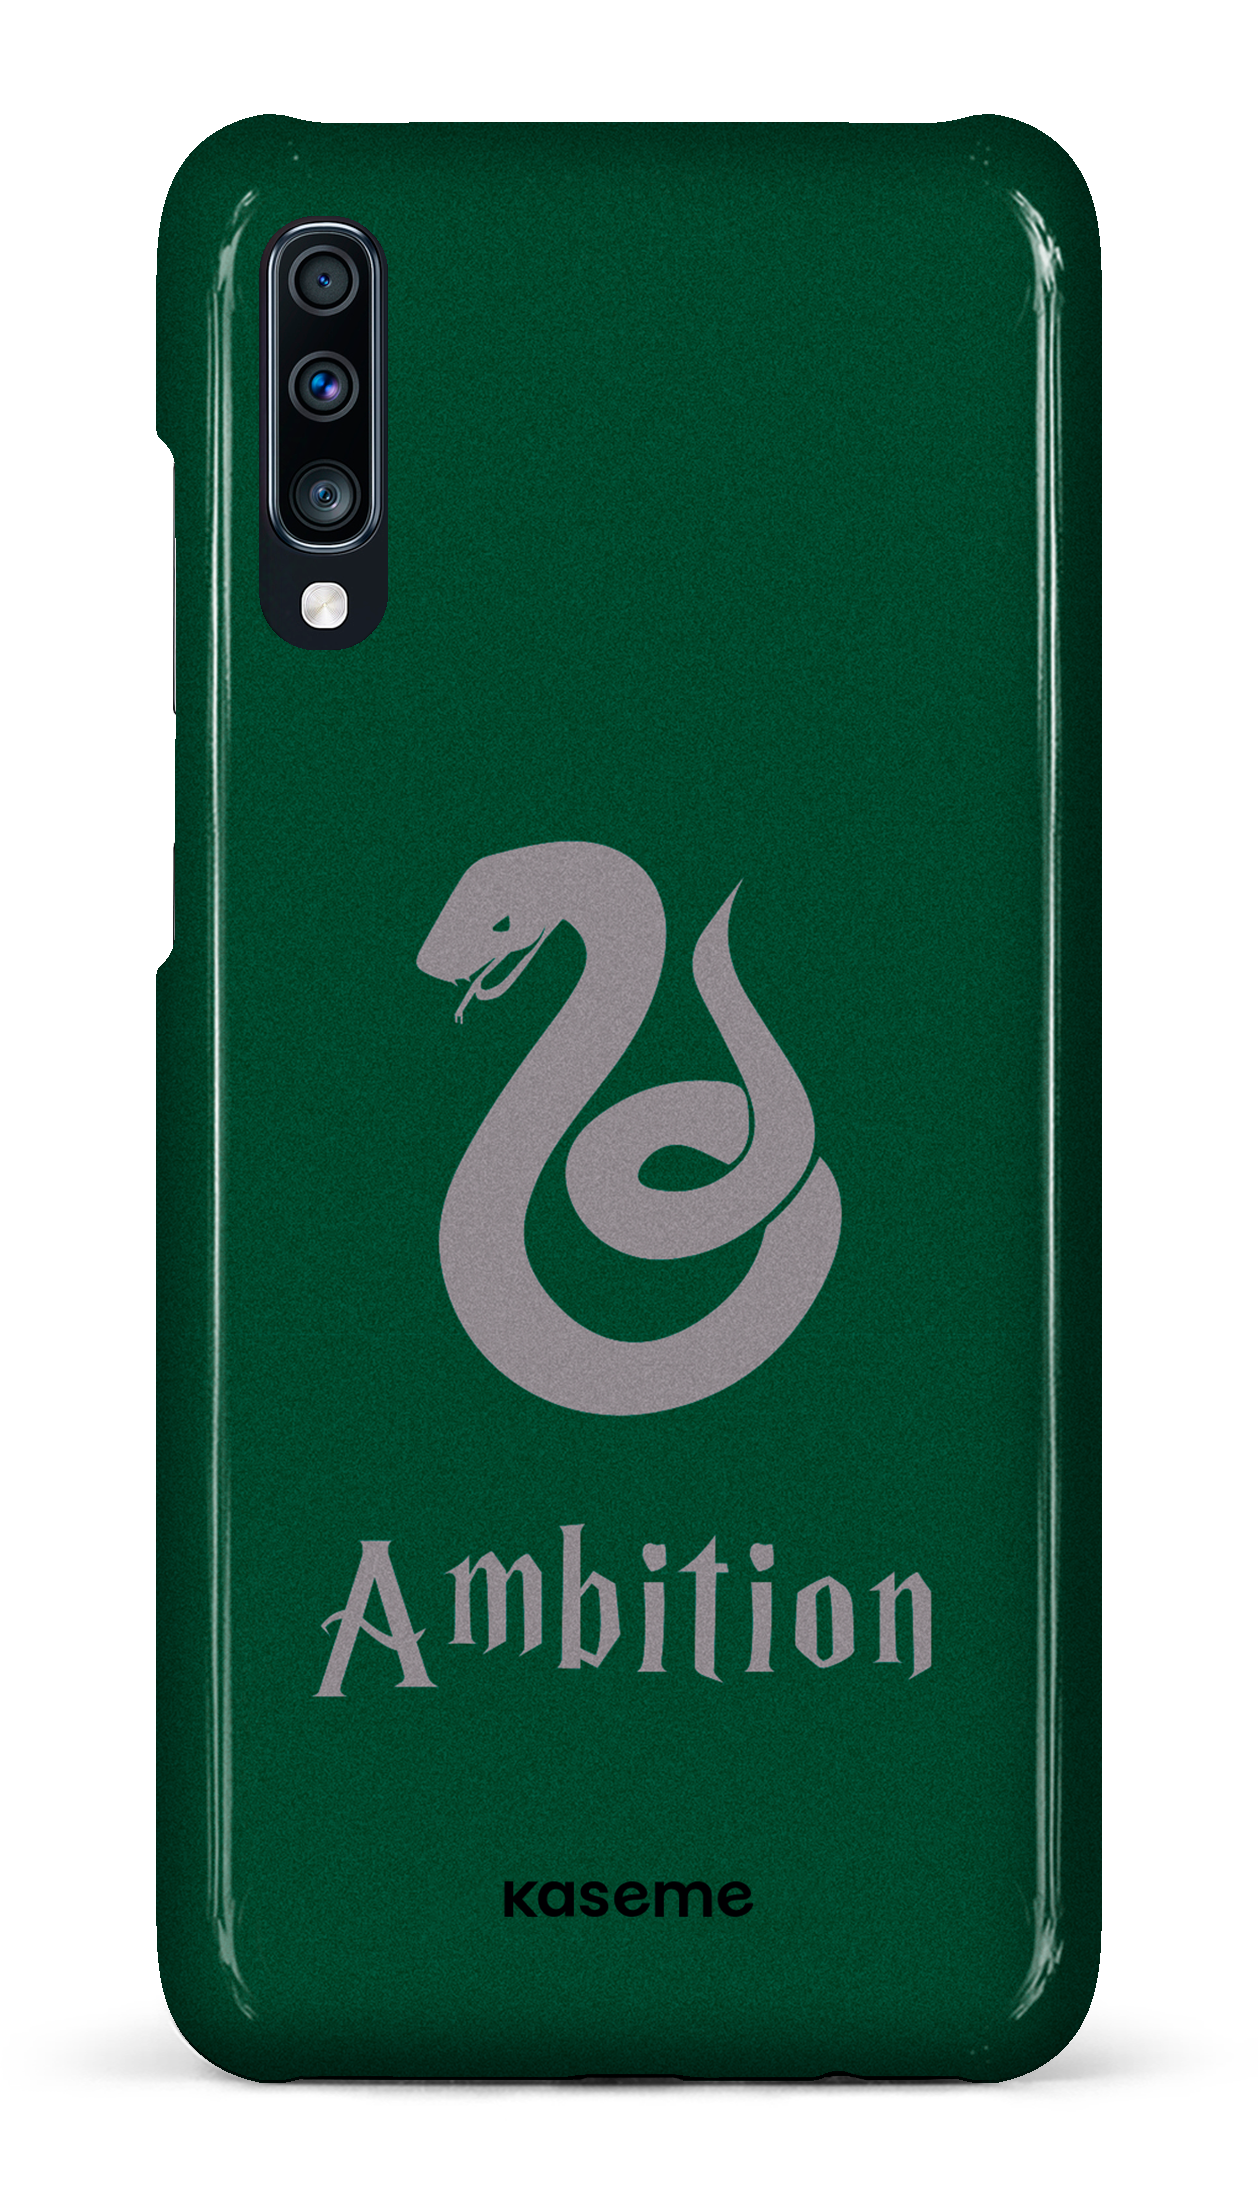 Ambition - Galaxy A70